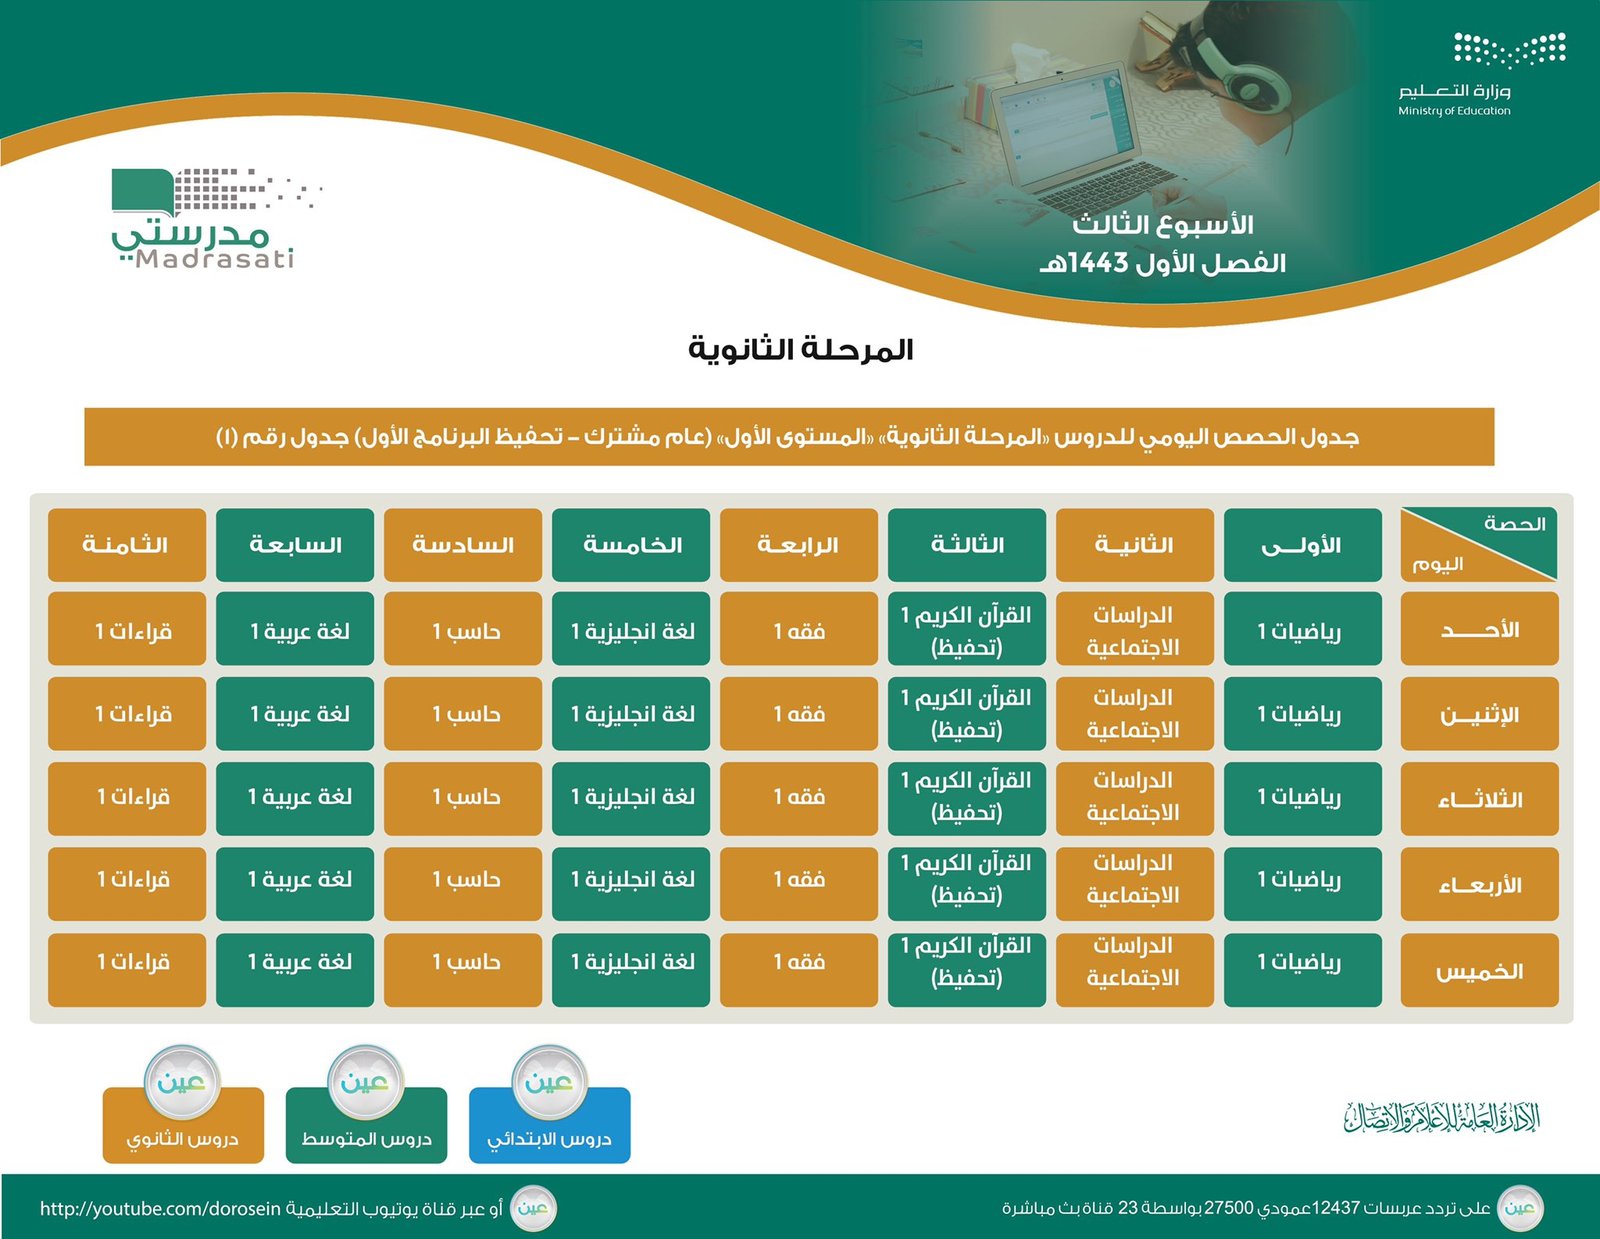 الحصص الدراسية للمتوسط والثانوي للأسبوع الثالث في السعودية ..